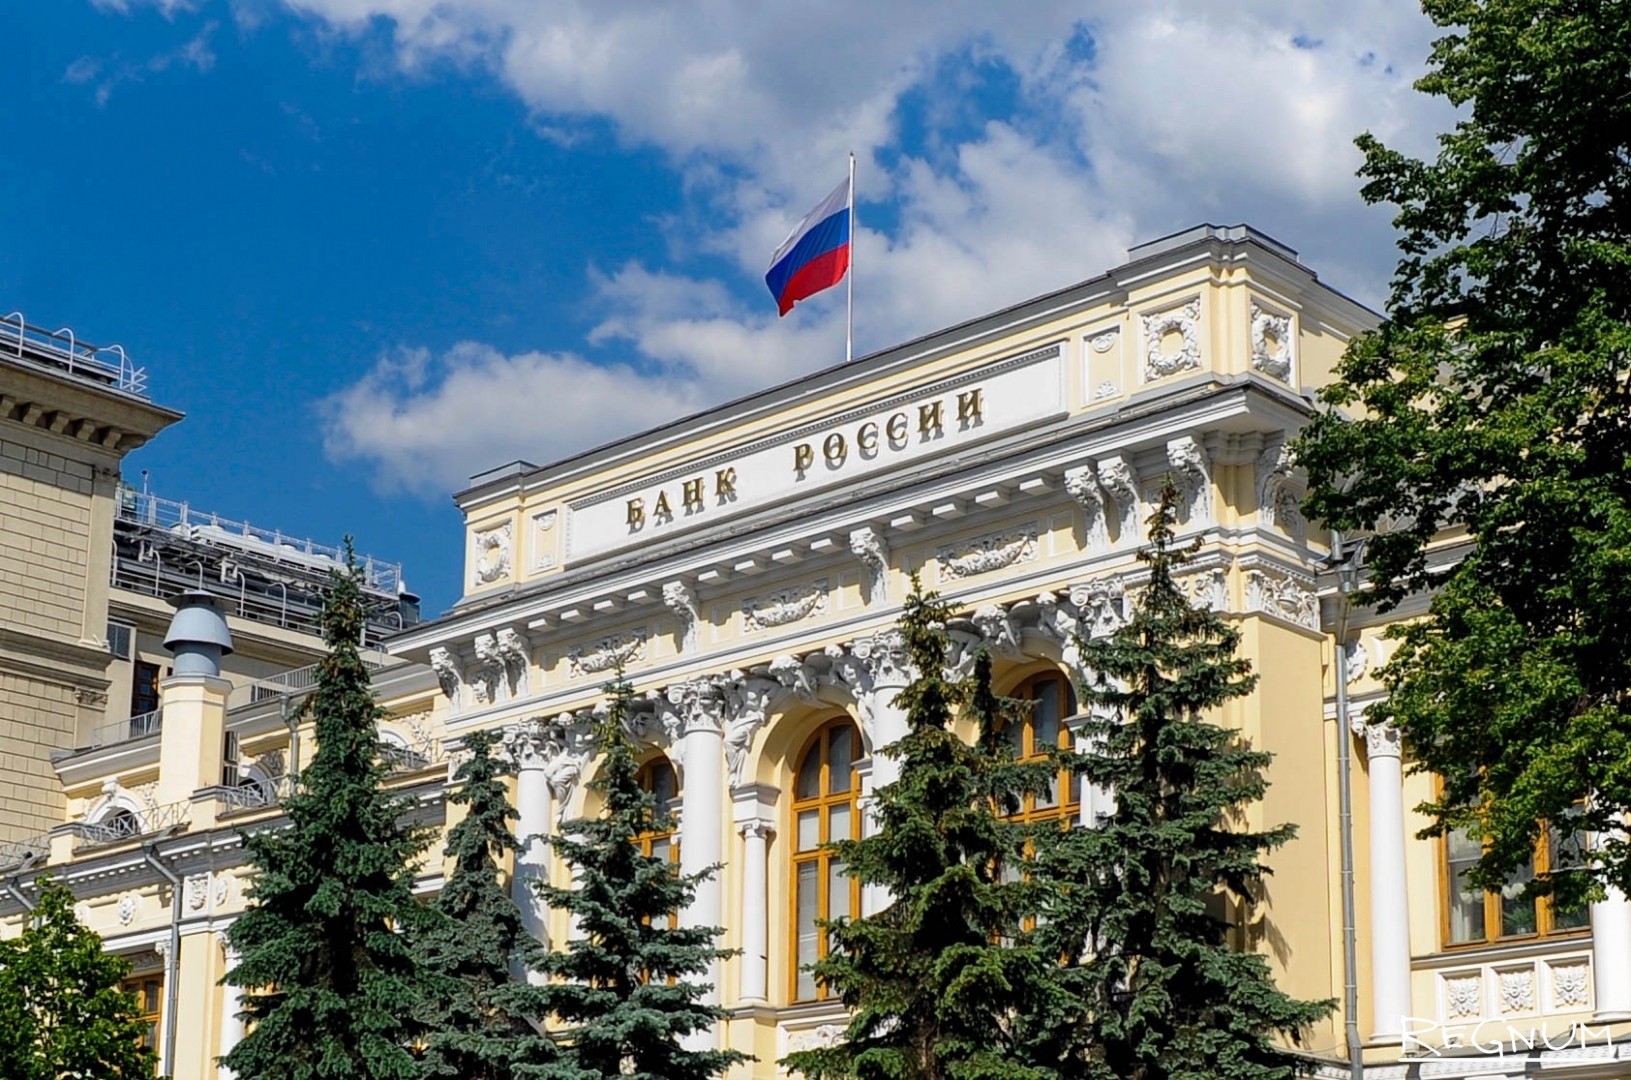 Банк России принял решение повысить ключевую ставку с 9,5% до 20% годовых